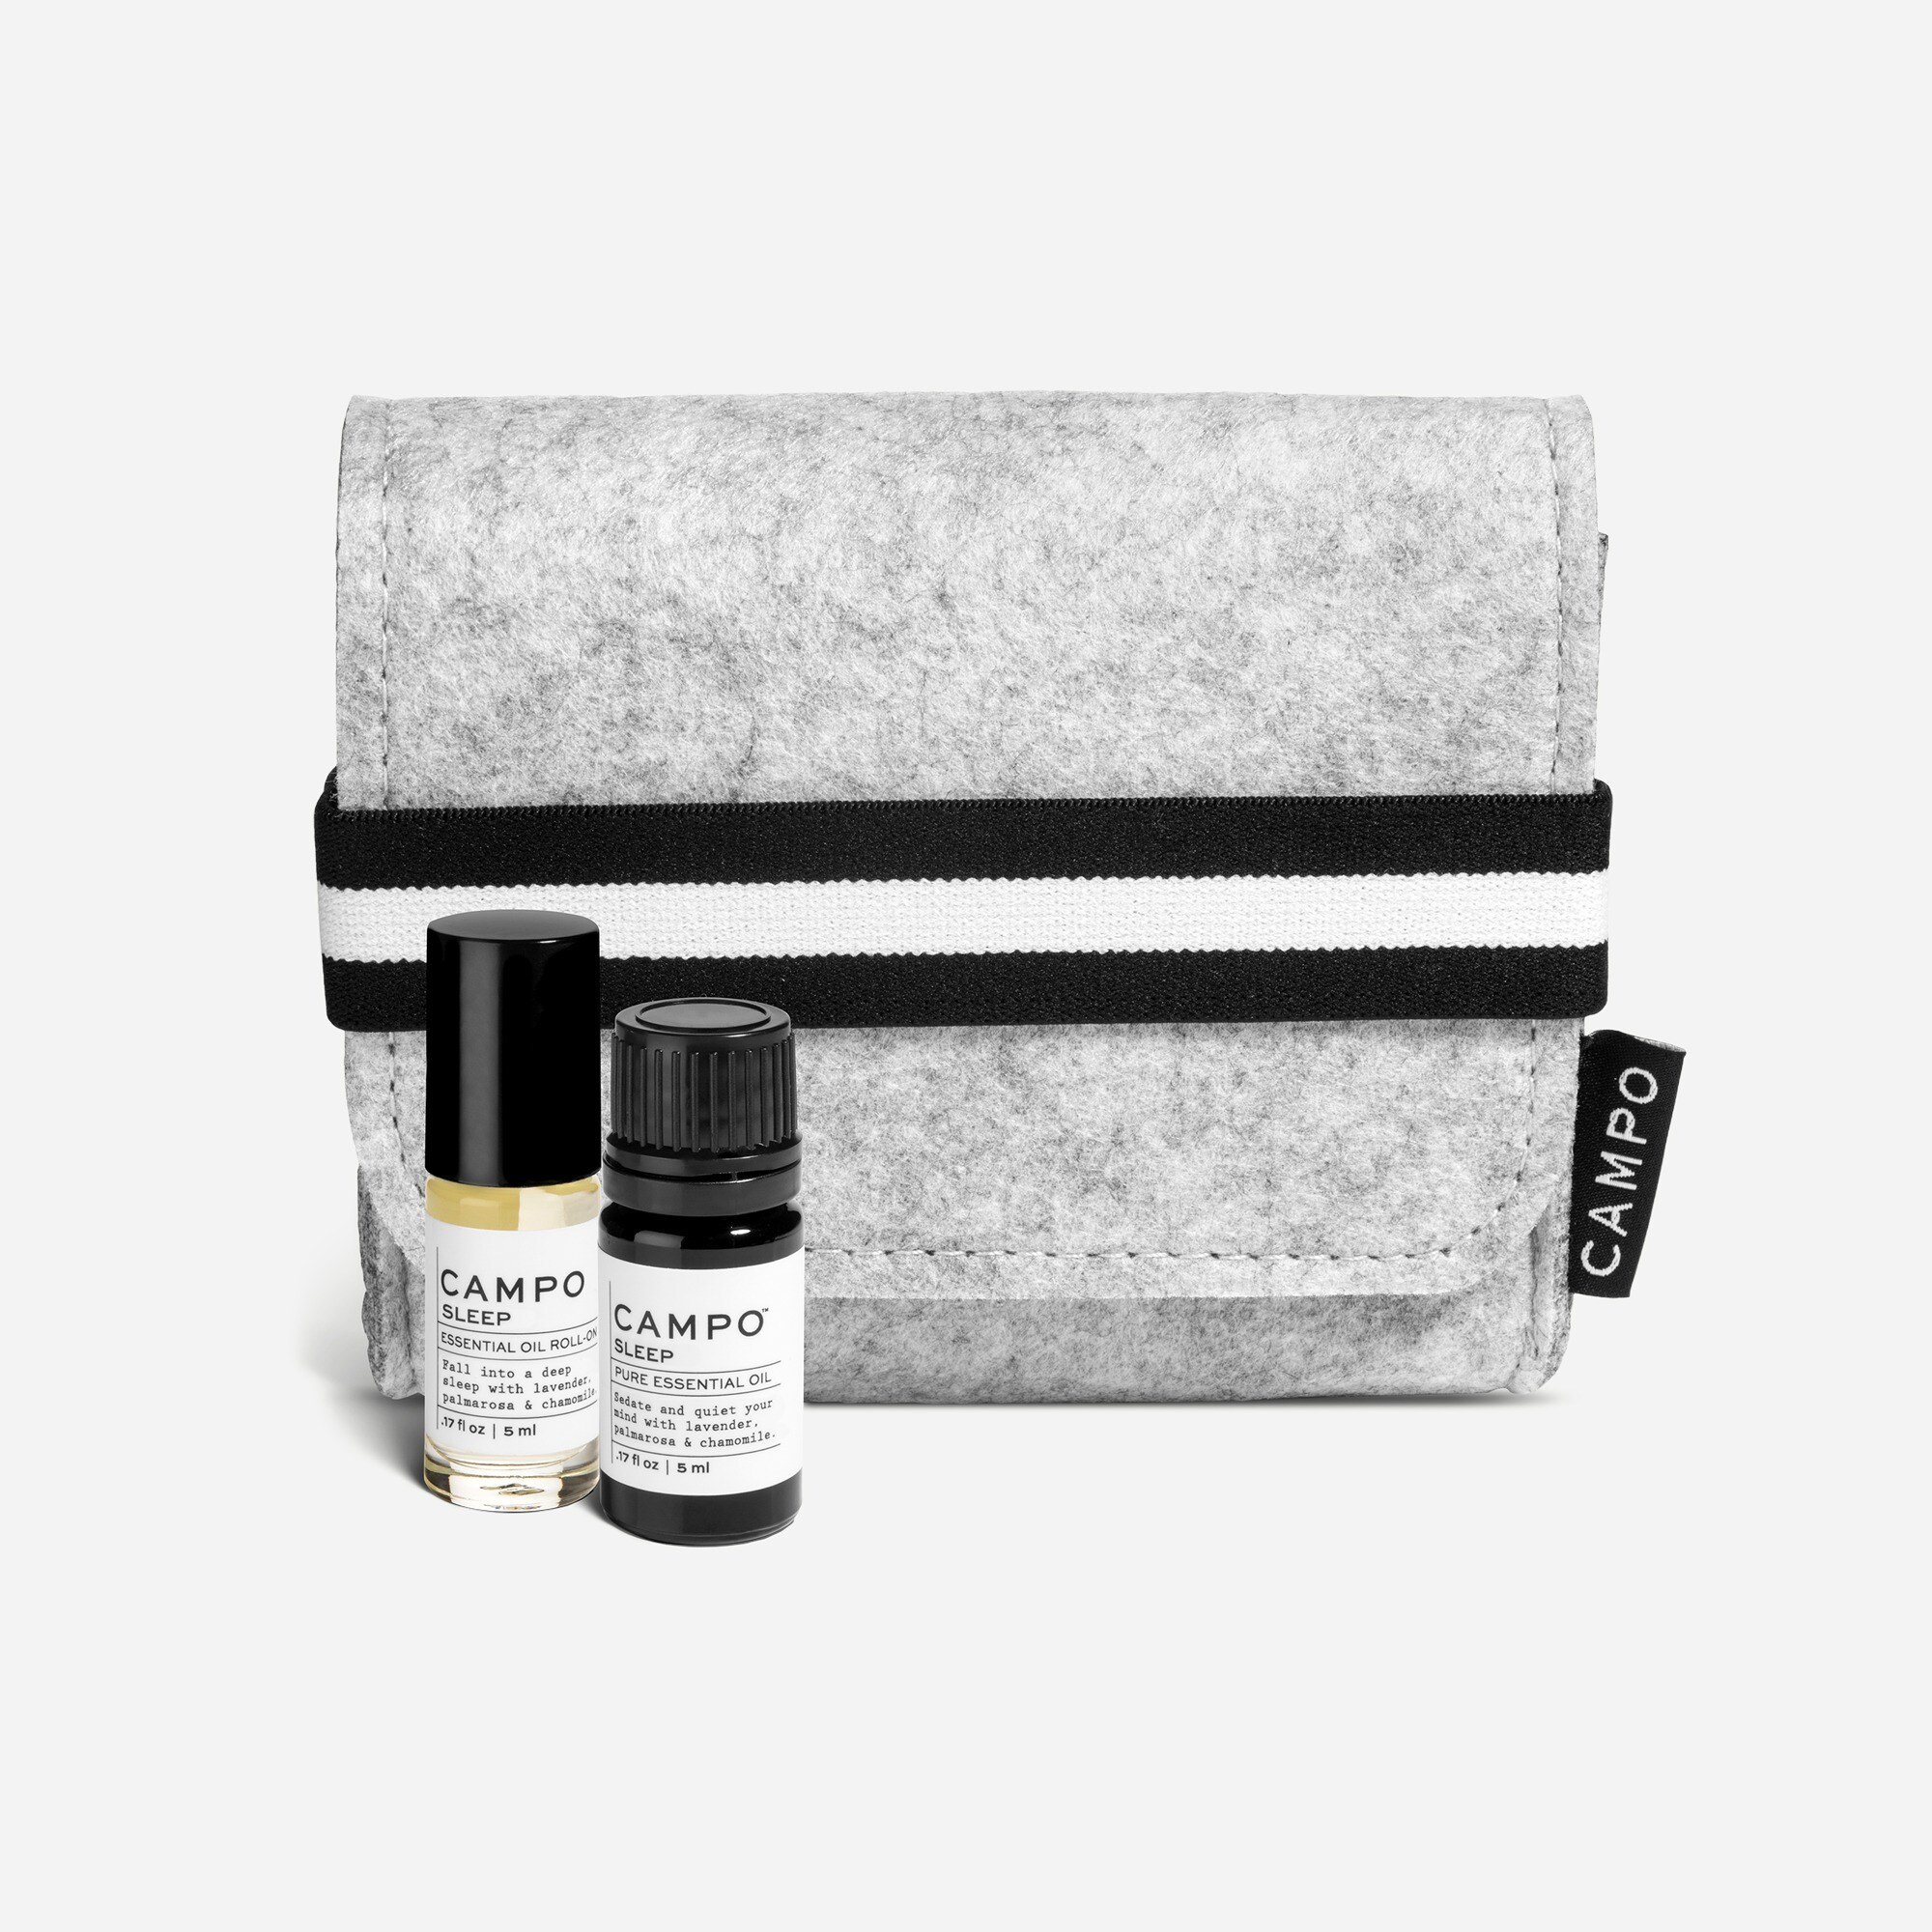  CAMPO® DEEP SLEEP aromatherapy kit